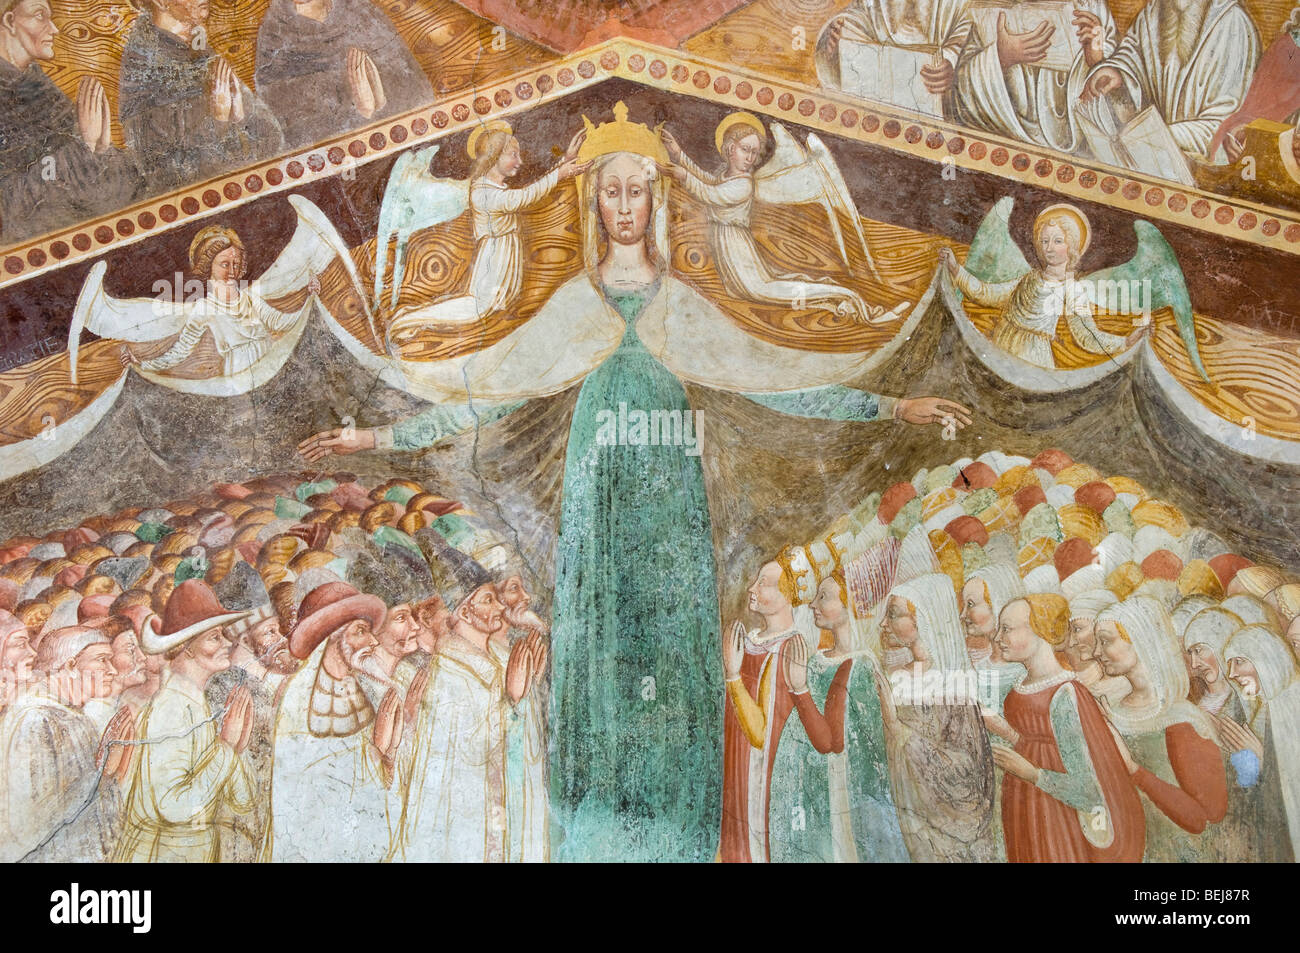 Frescoes, Boario Terme, Lombardy, Italy Stock Photo